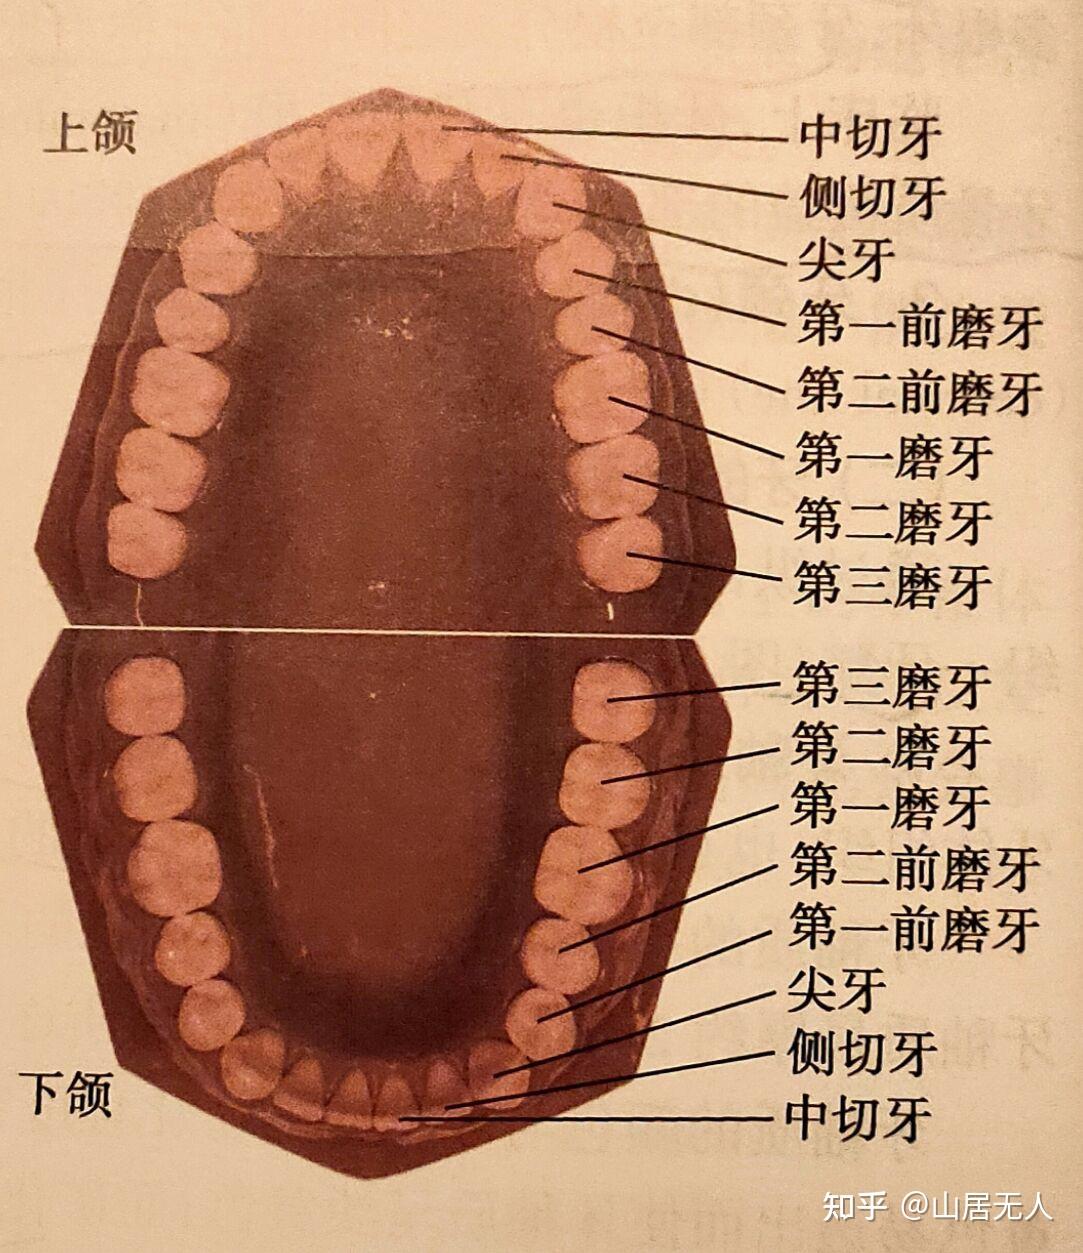 牙齿分几种类型图片图片